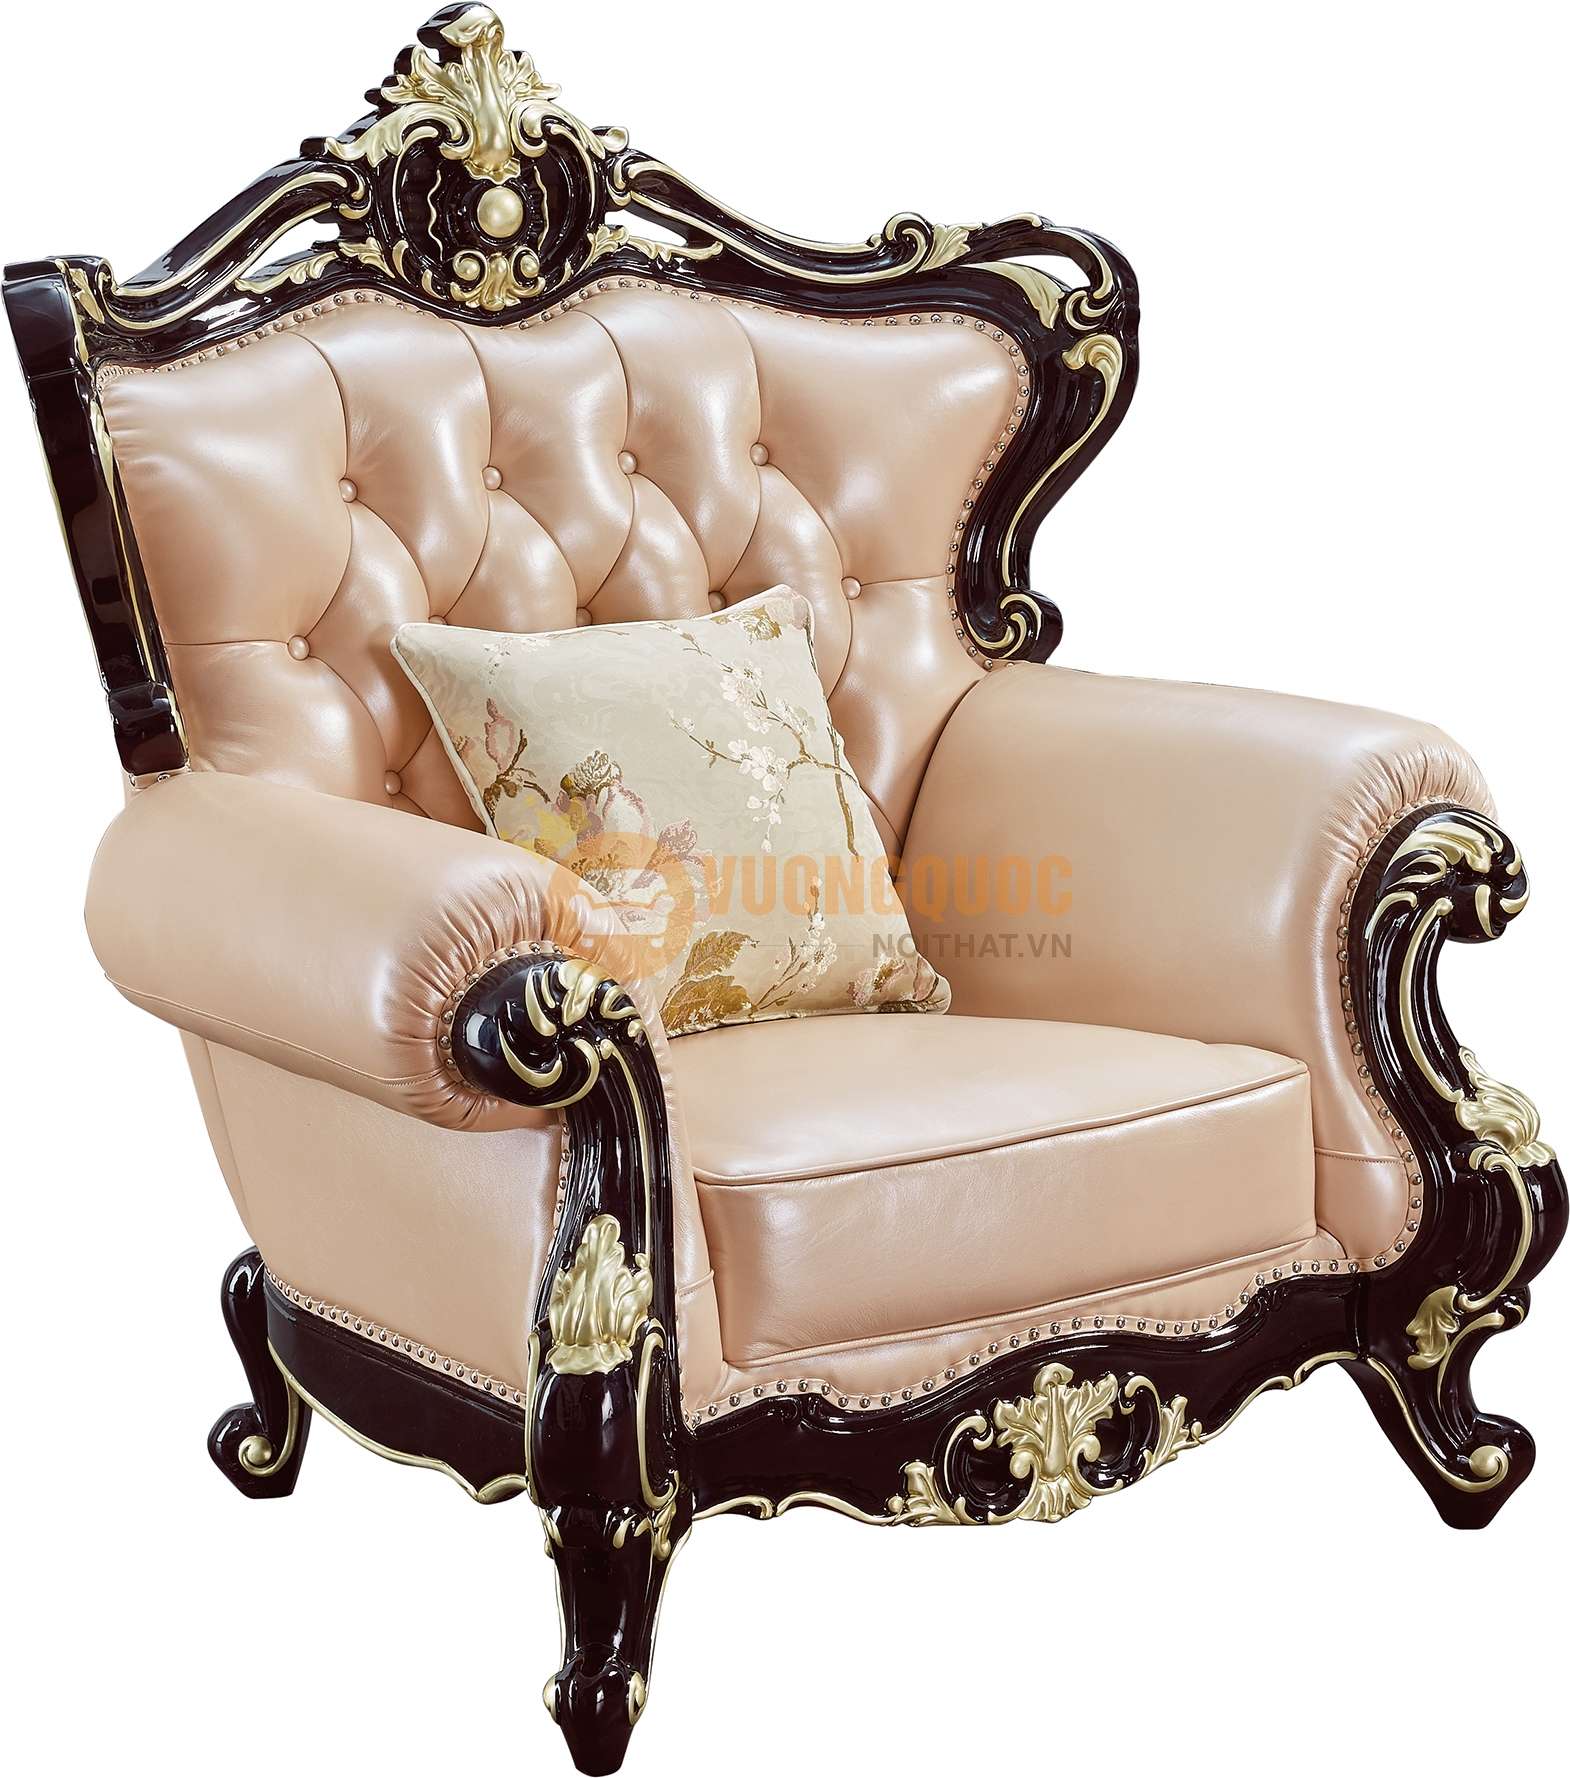 Bộ sofa phòng khách tân cổ điển cao cấp nhập khẩu JVN6911AS sofa đơn